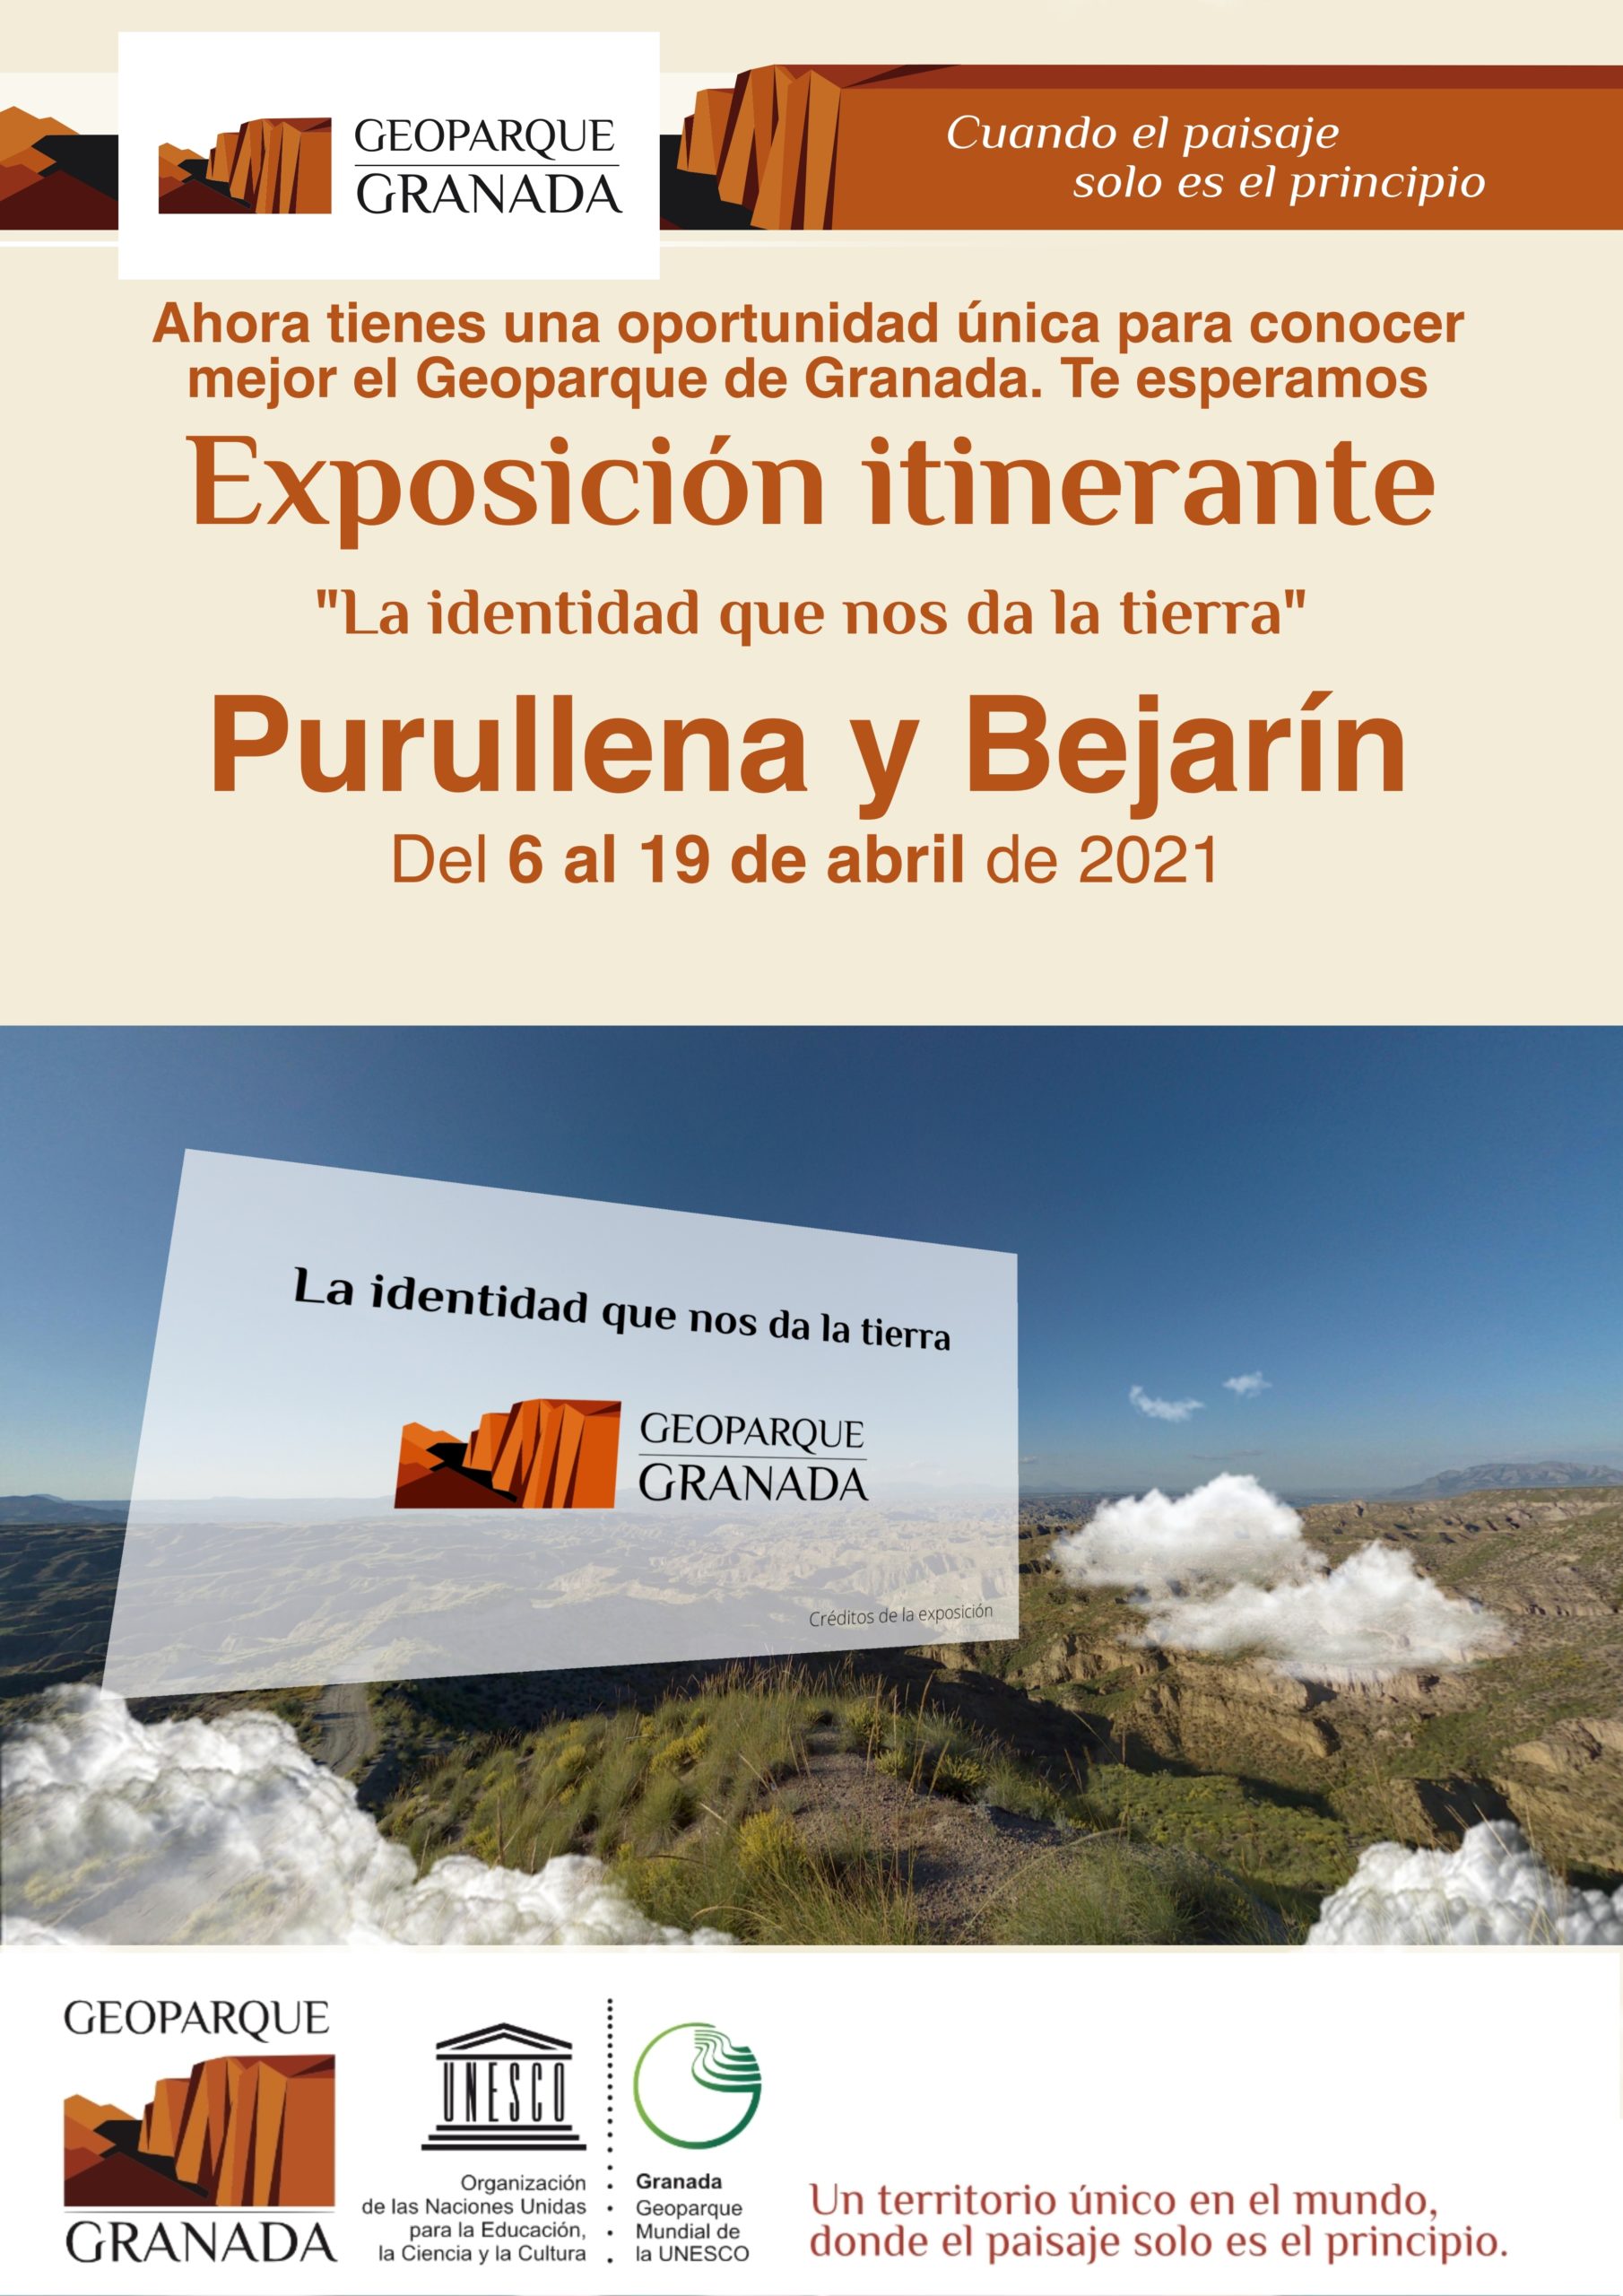 A3 CARTEL INFORMATIVO EXPOSICIÓN ITINERANTE purullena y bejarin scaled - Exposición sobre el Geoparque, en PURULLENA del 6 AL 19 de abril de 2021. - Geoparque de Granada